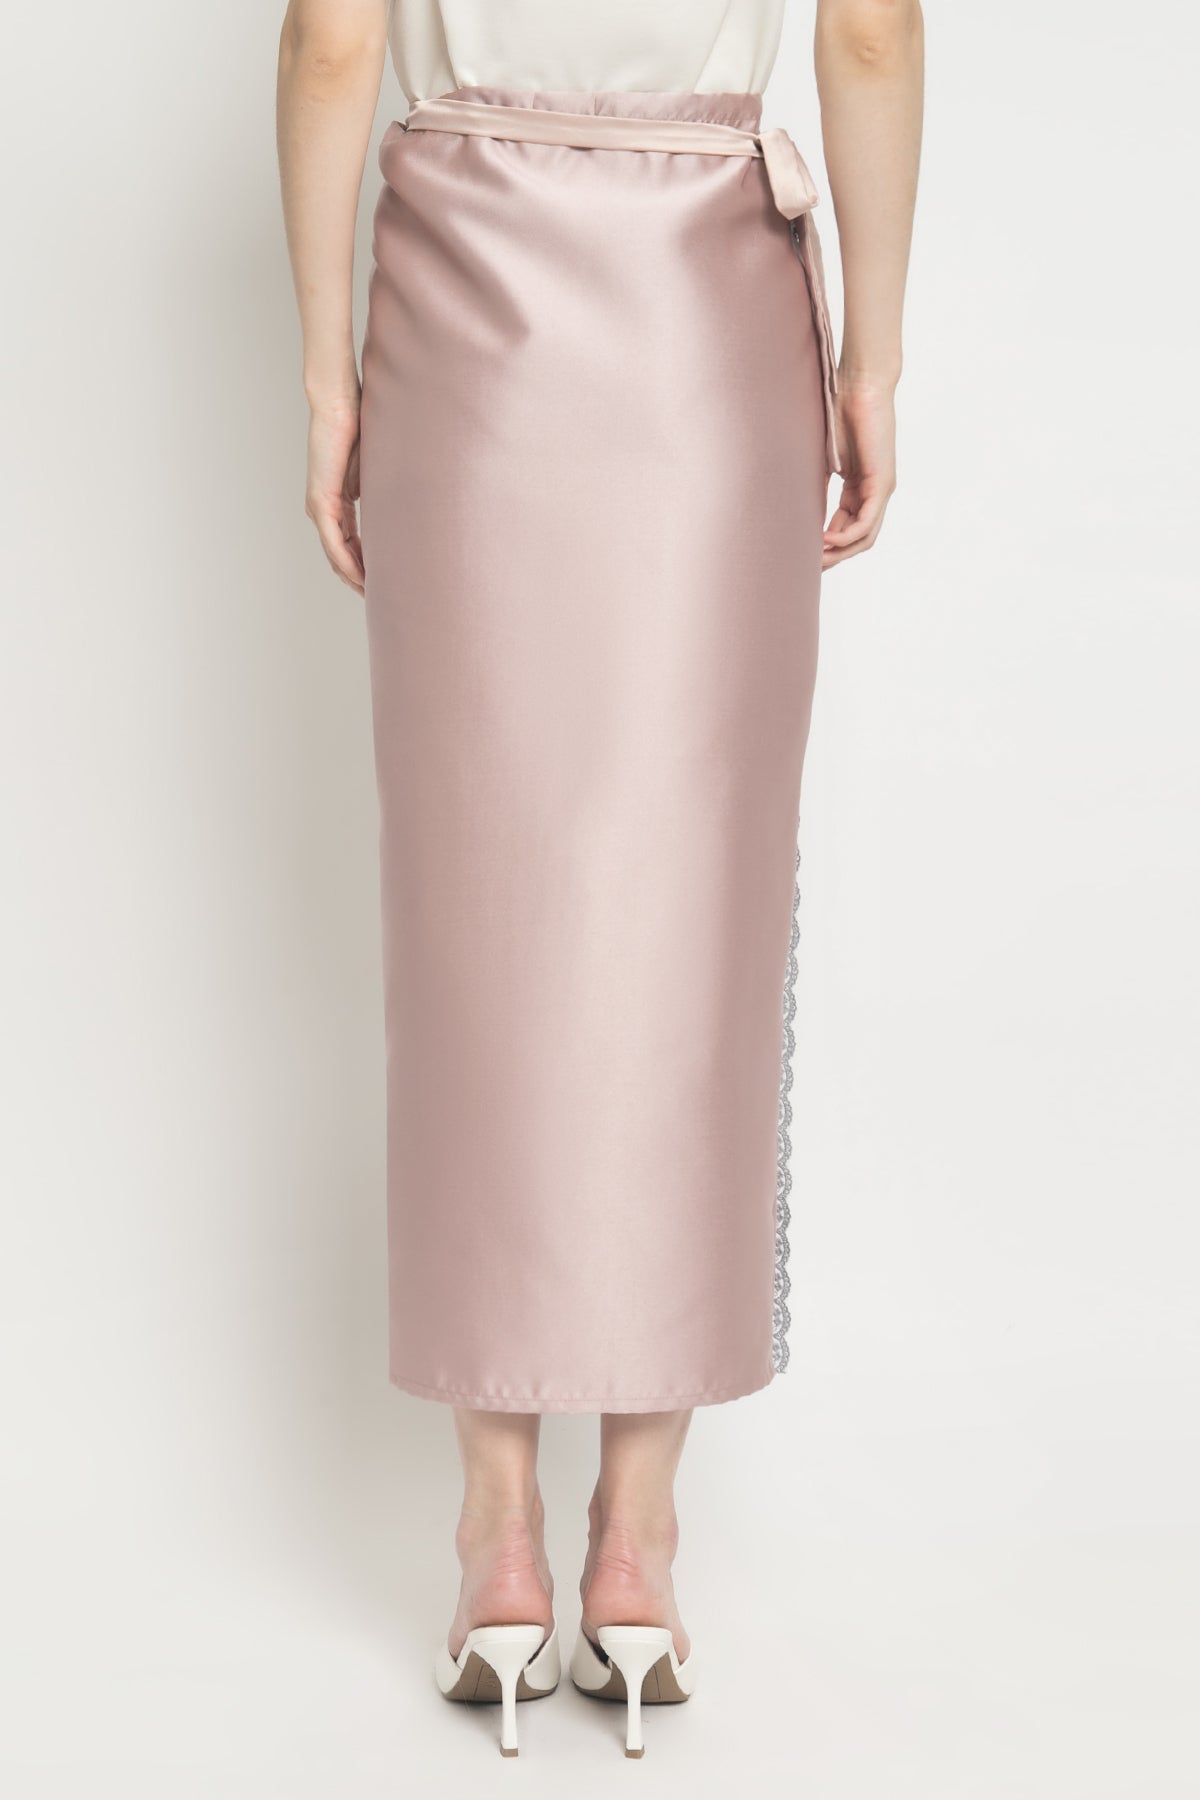 Bien Skirt in Rosy Grey